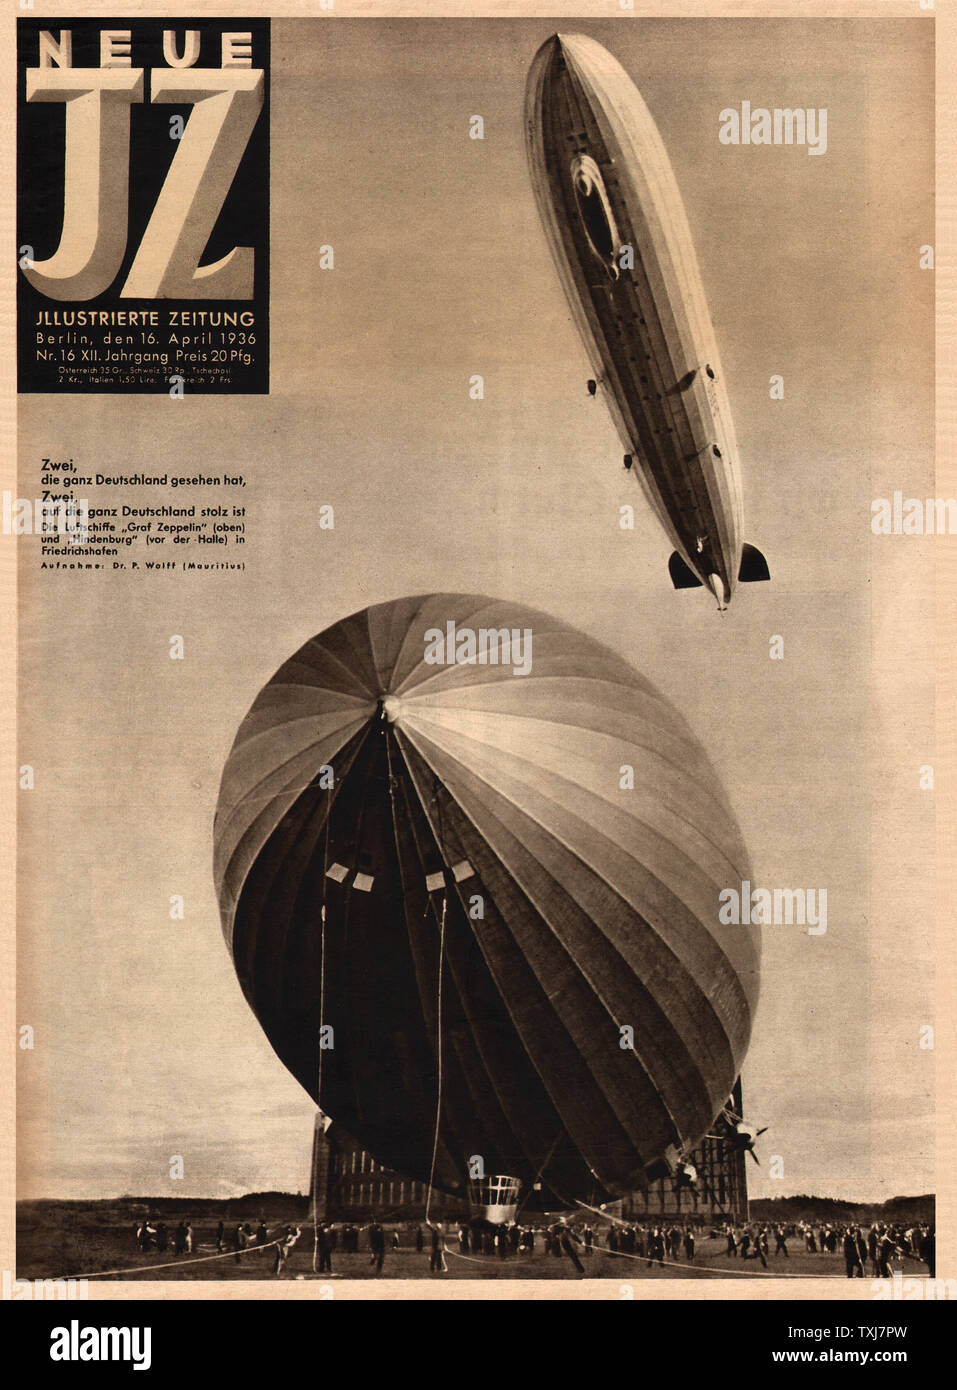 1936 Neue Illustrirte Zeitung Zeppelin's Hindenburg and Graf Zeppelin at Friederichshafen, Germany Stock Photo